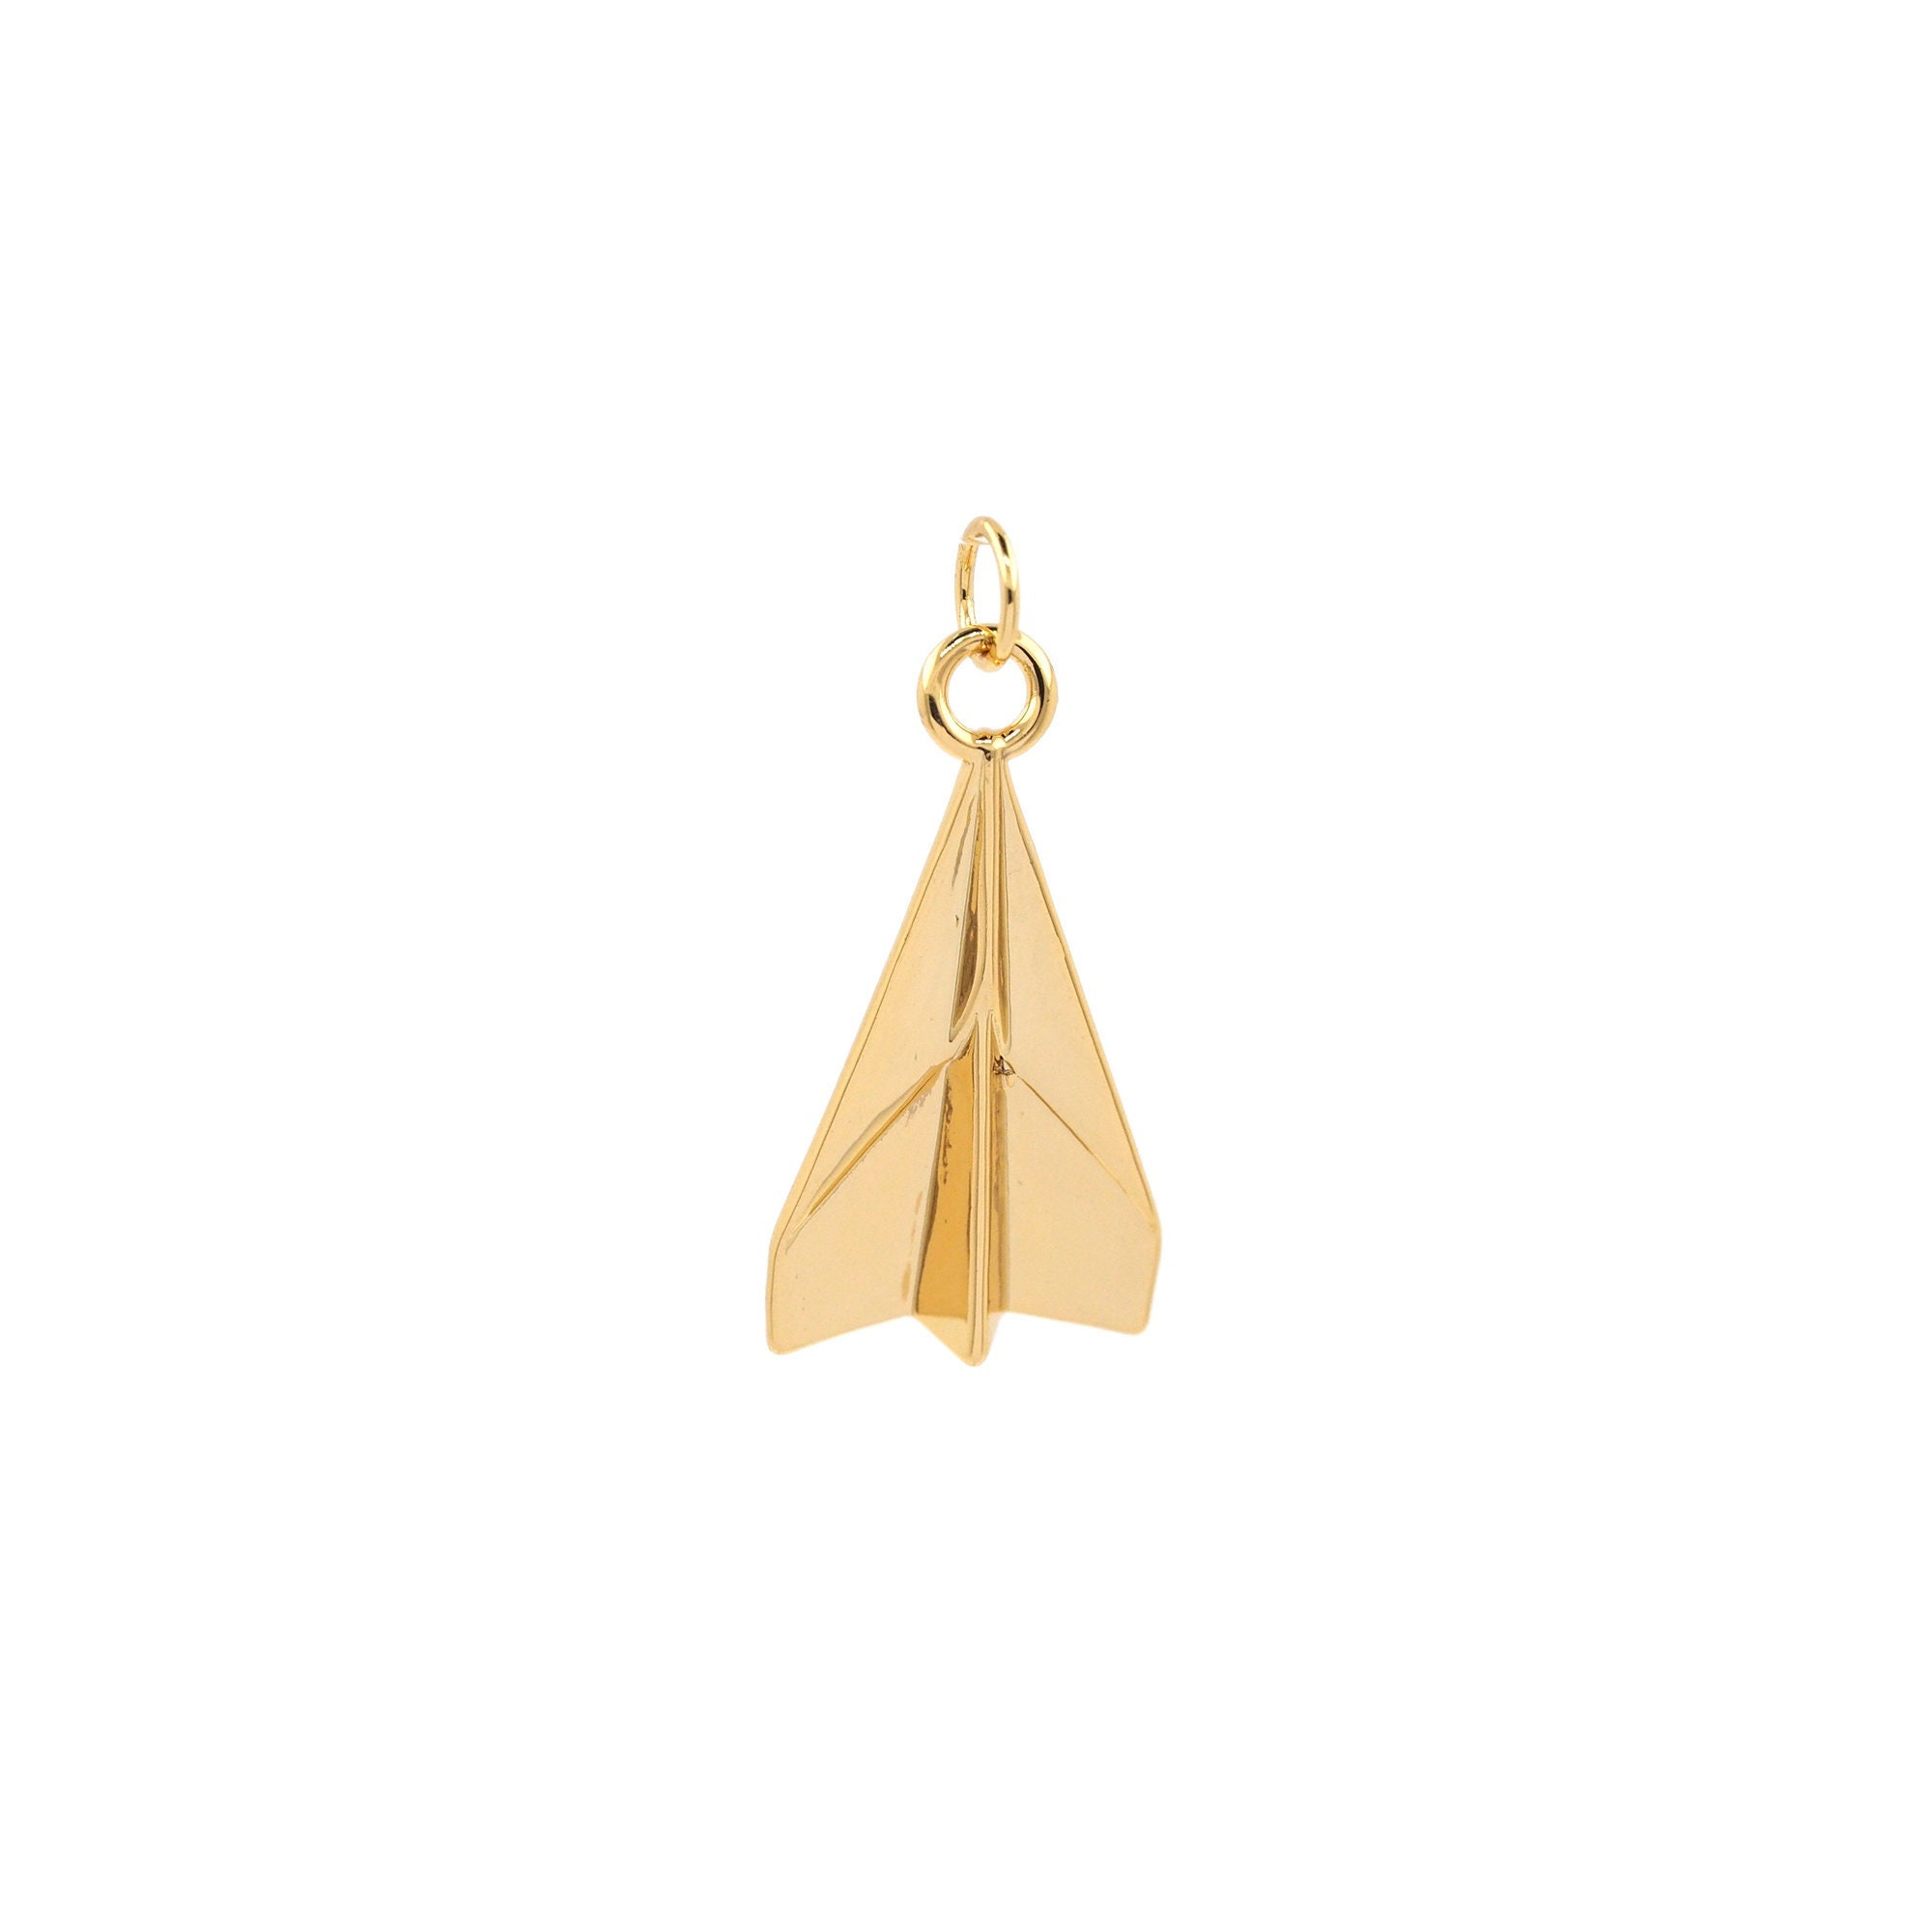 3D Paper Plane Necklace - 18k Gold Paper Plane Charm Necklace